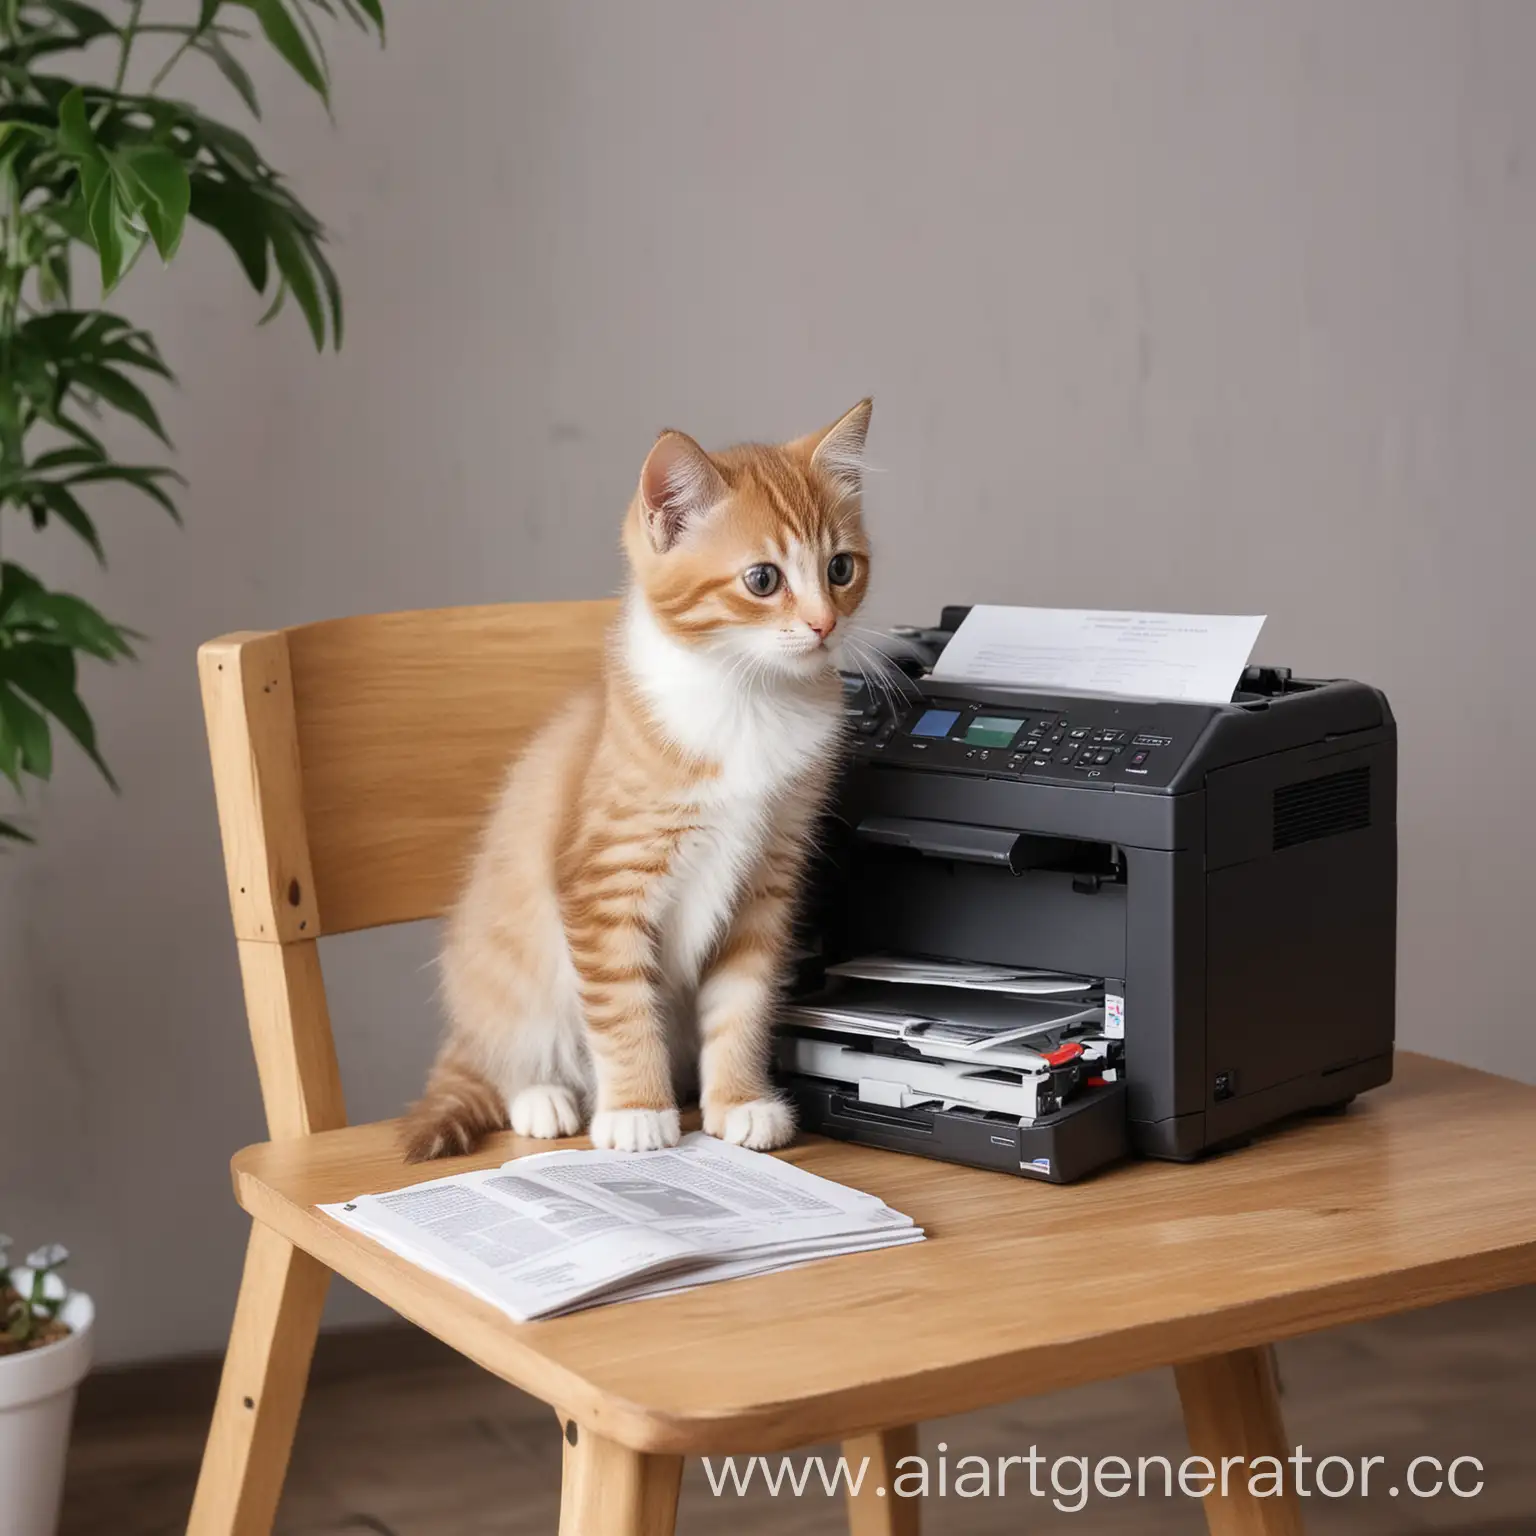 котик сидит на стуле, рядом стоит мфу принтер, котик печатает книги, проекты, документы, офис технического сервиса